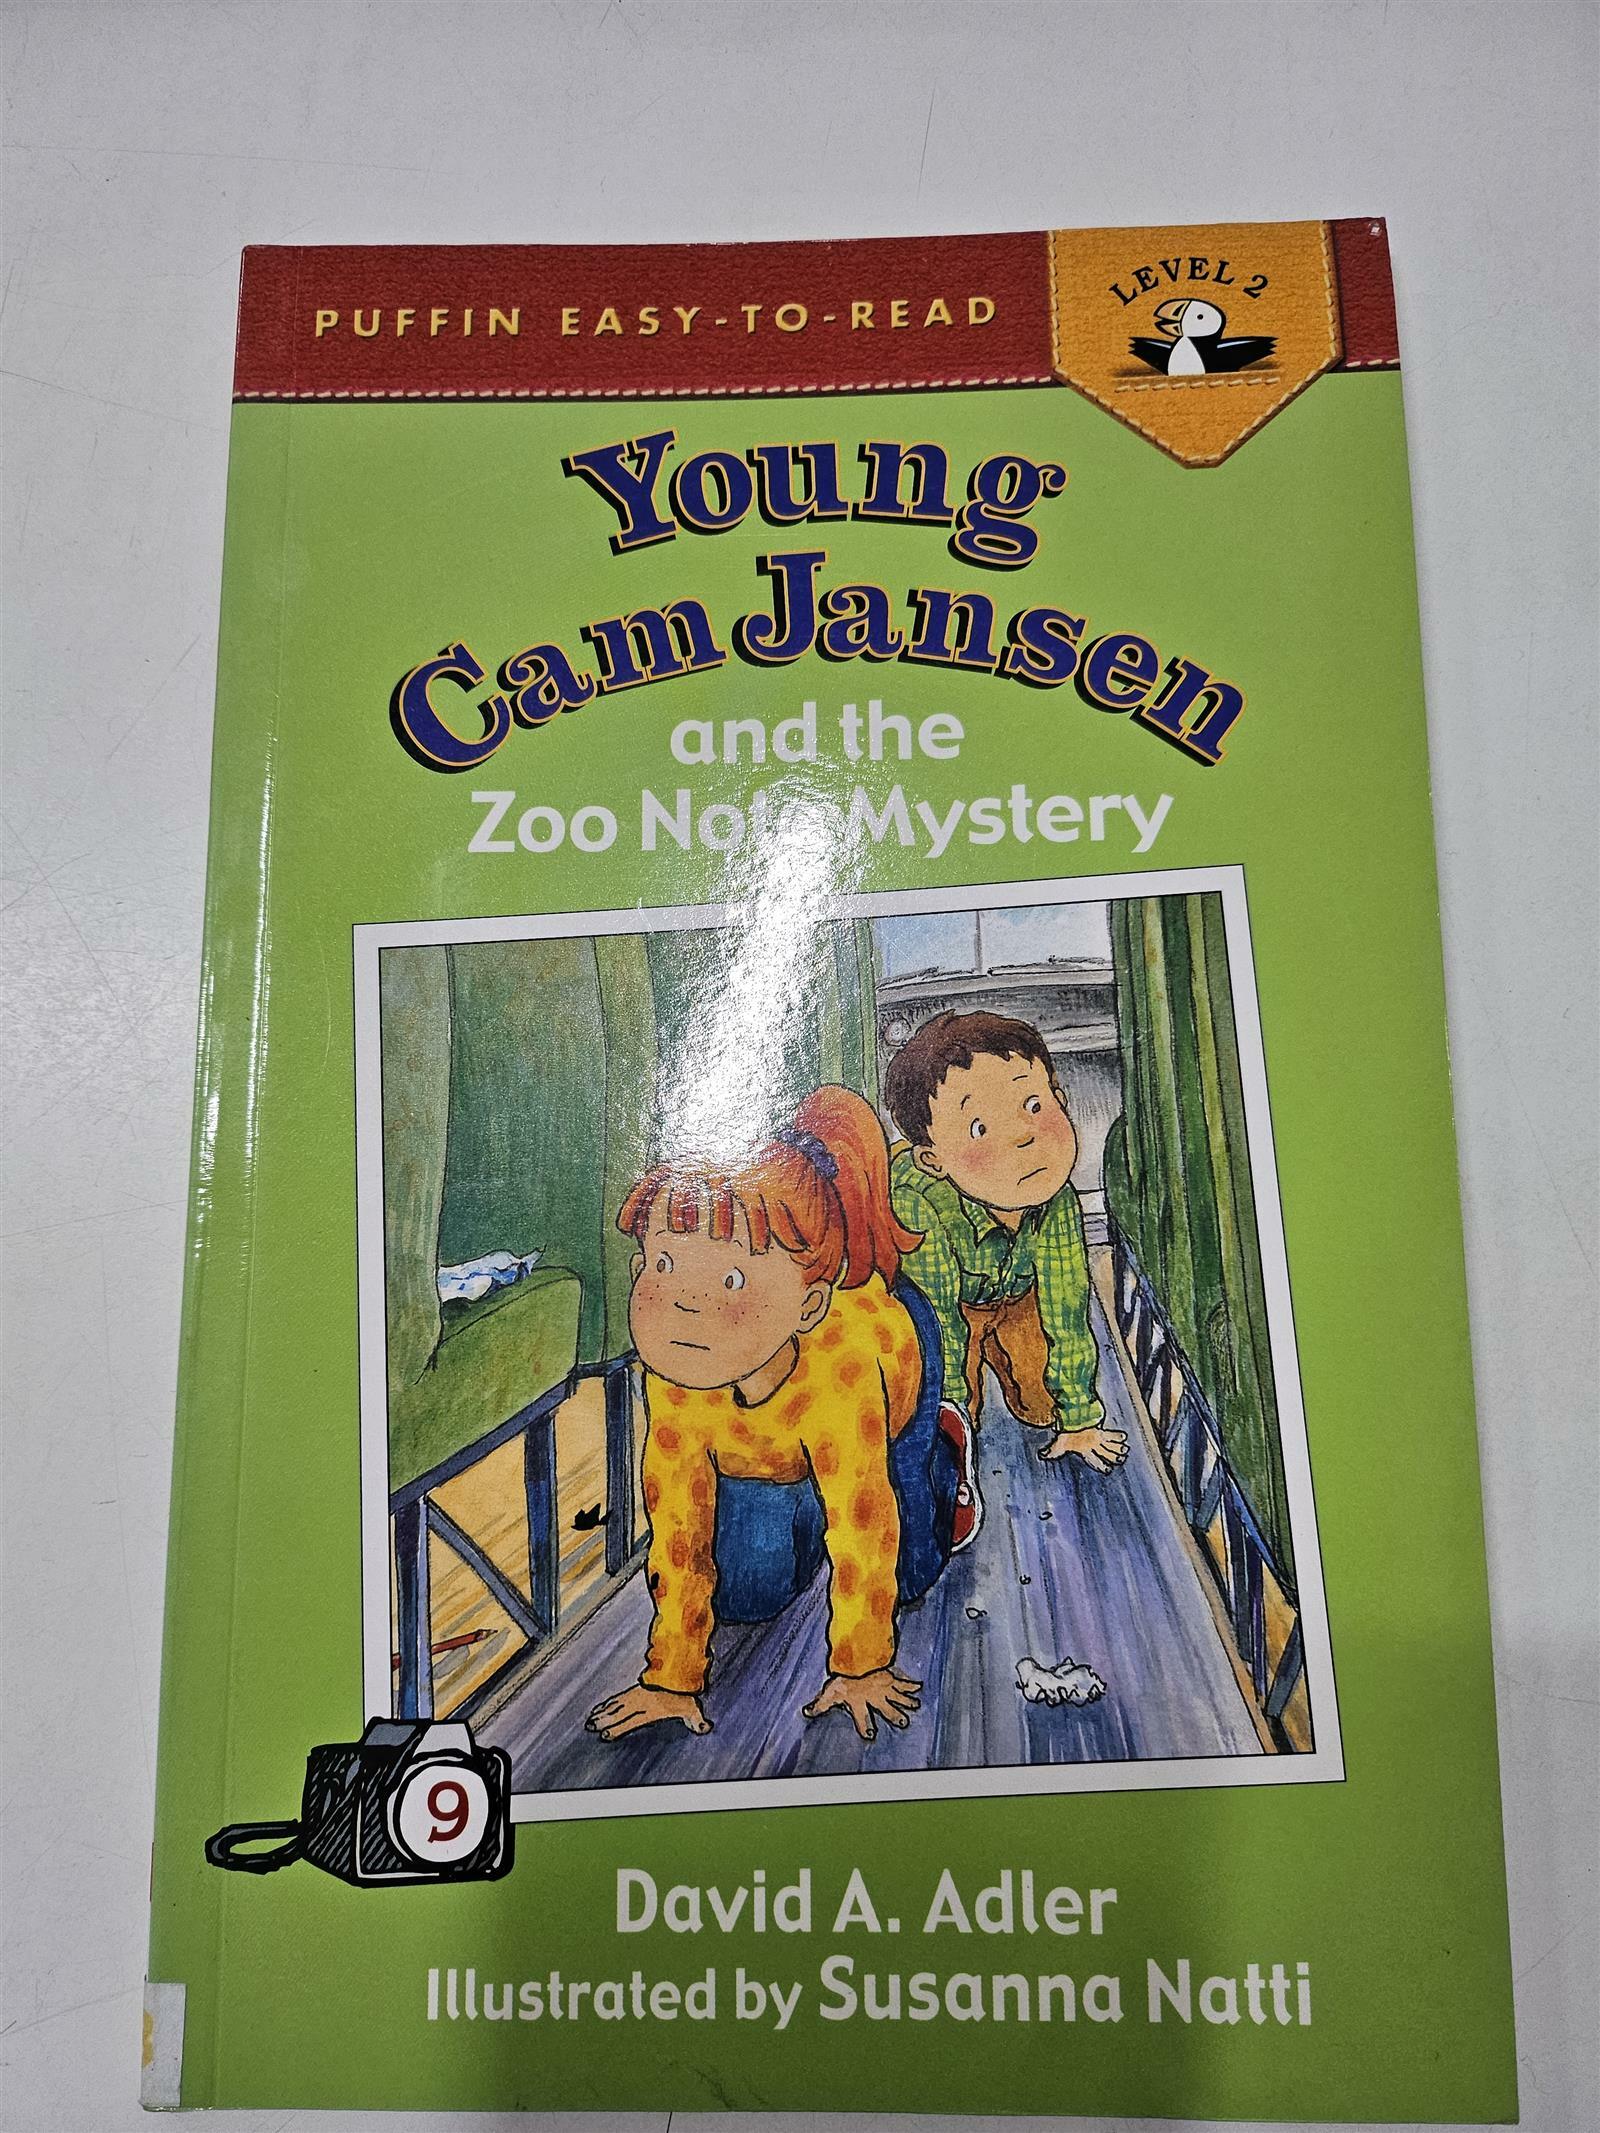 [중고] Young CAM Jansen and the Zoo Note Mystery (Paperback)